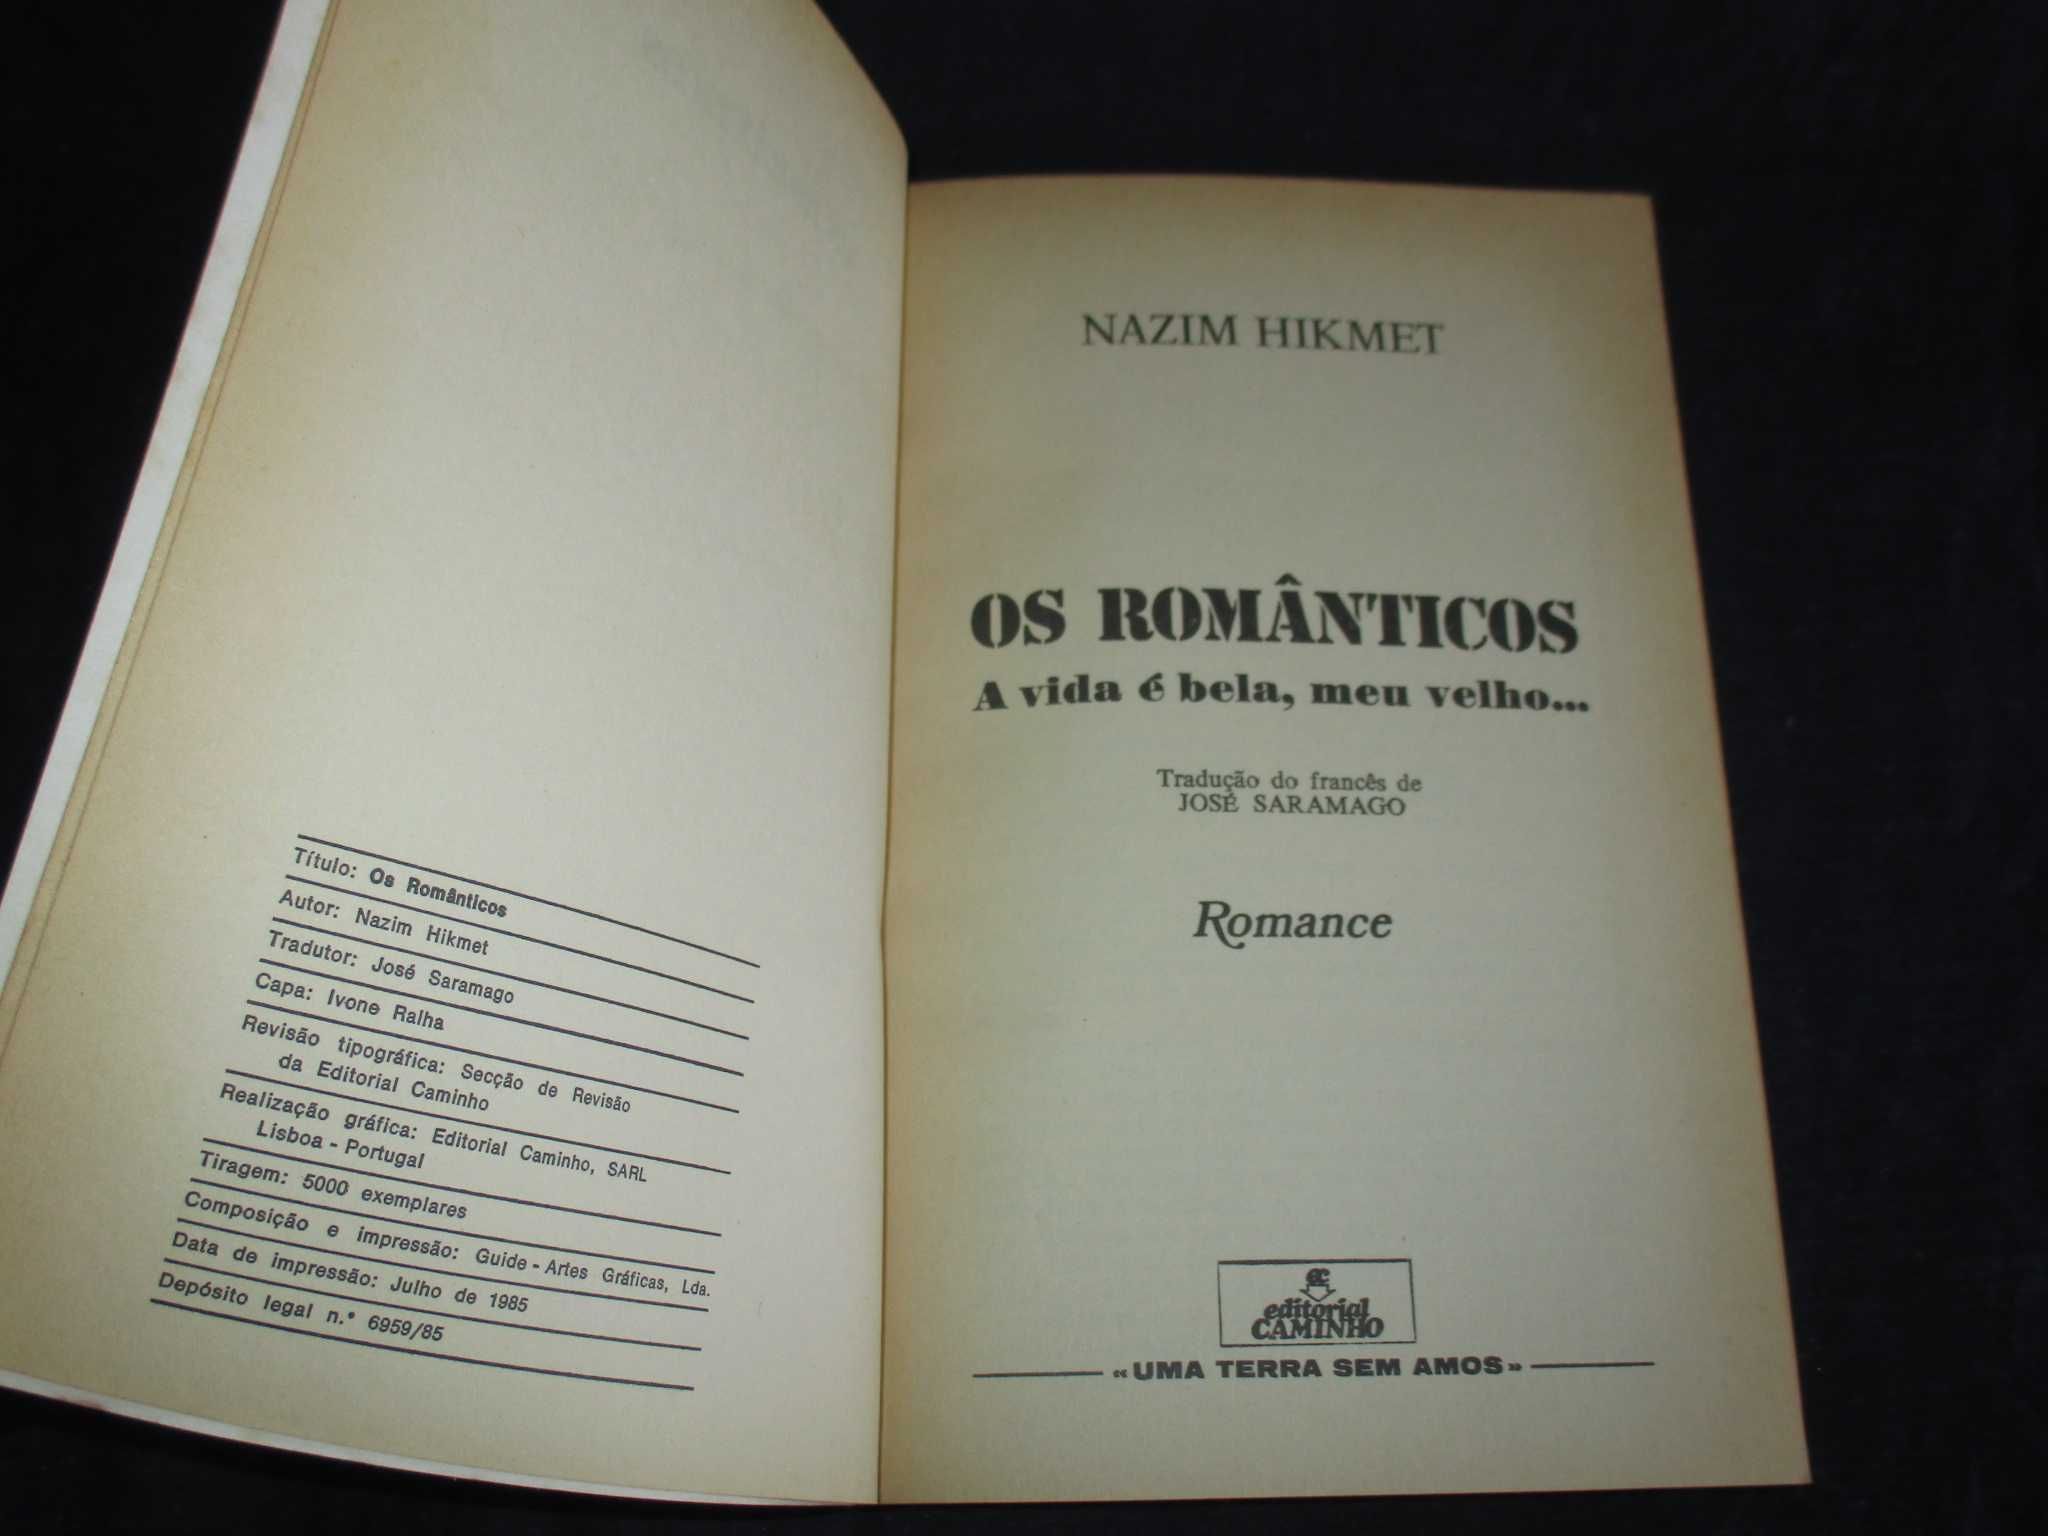 Livro Os Românticos Nazim Hikmet Tradução de José Saramago